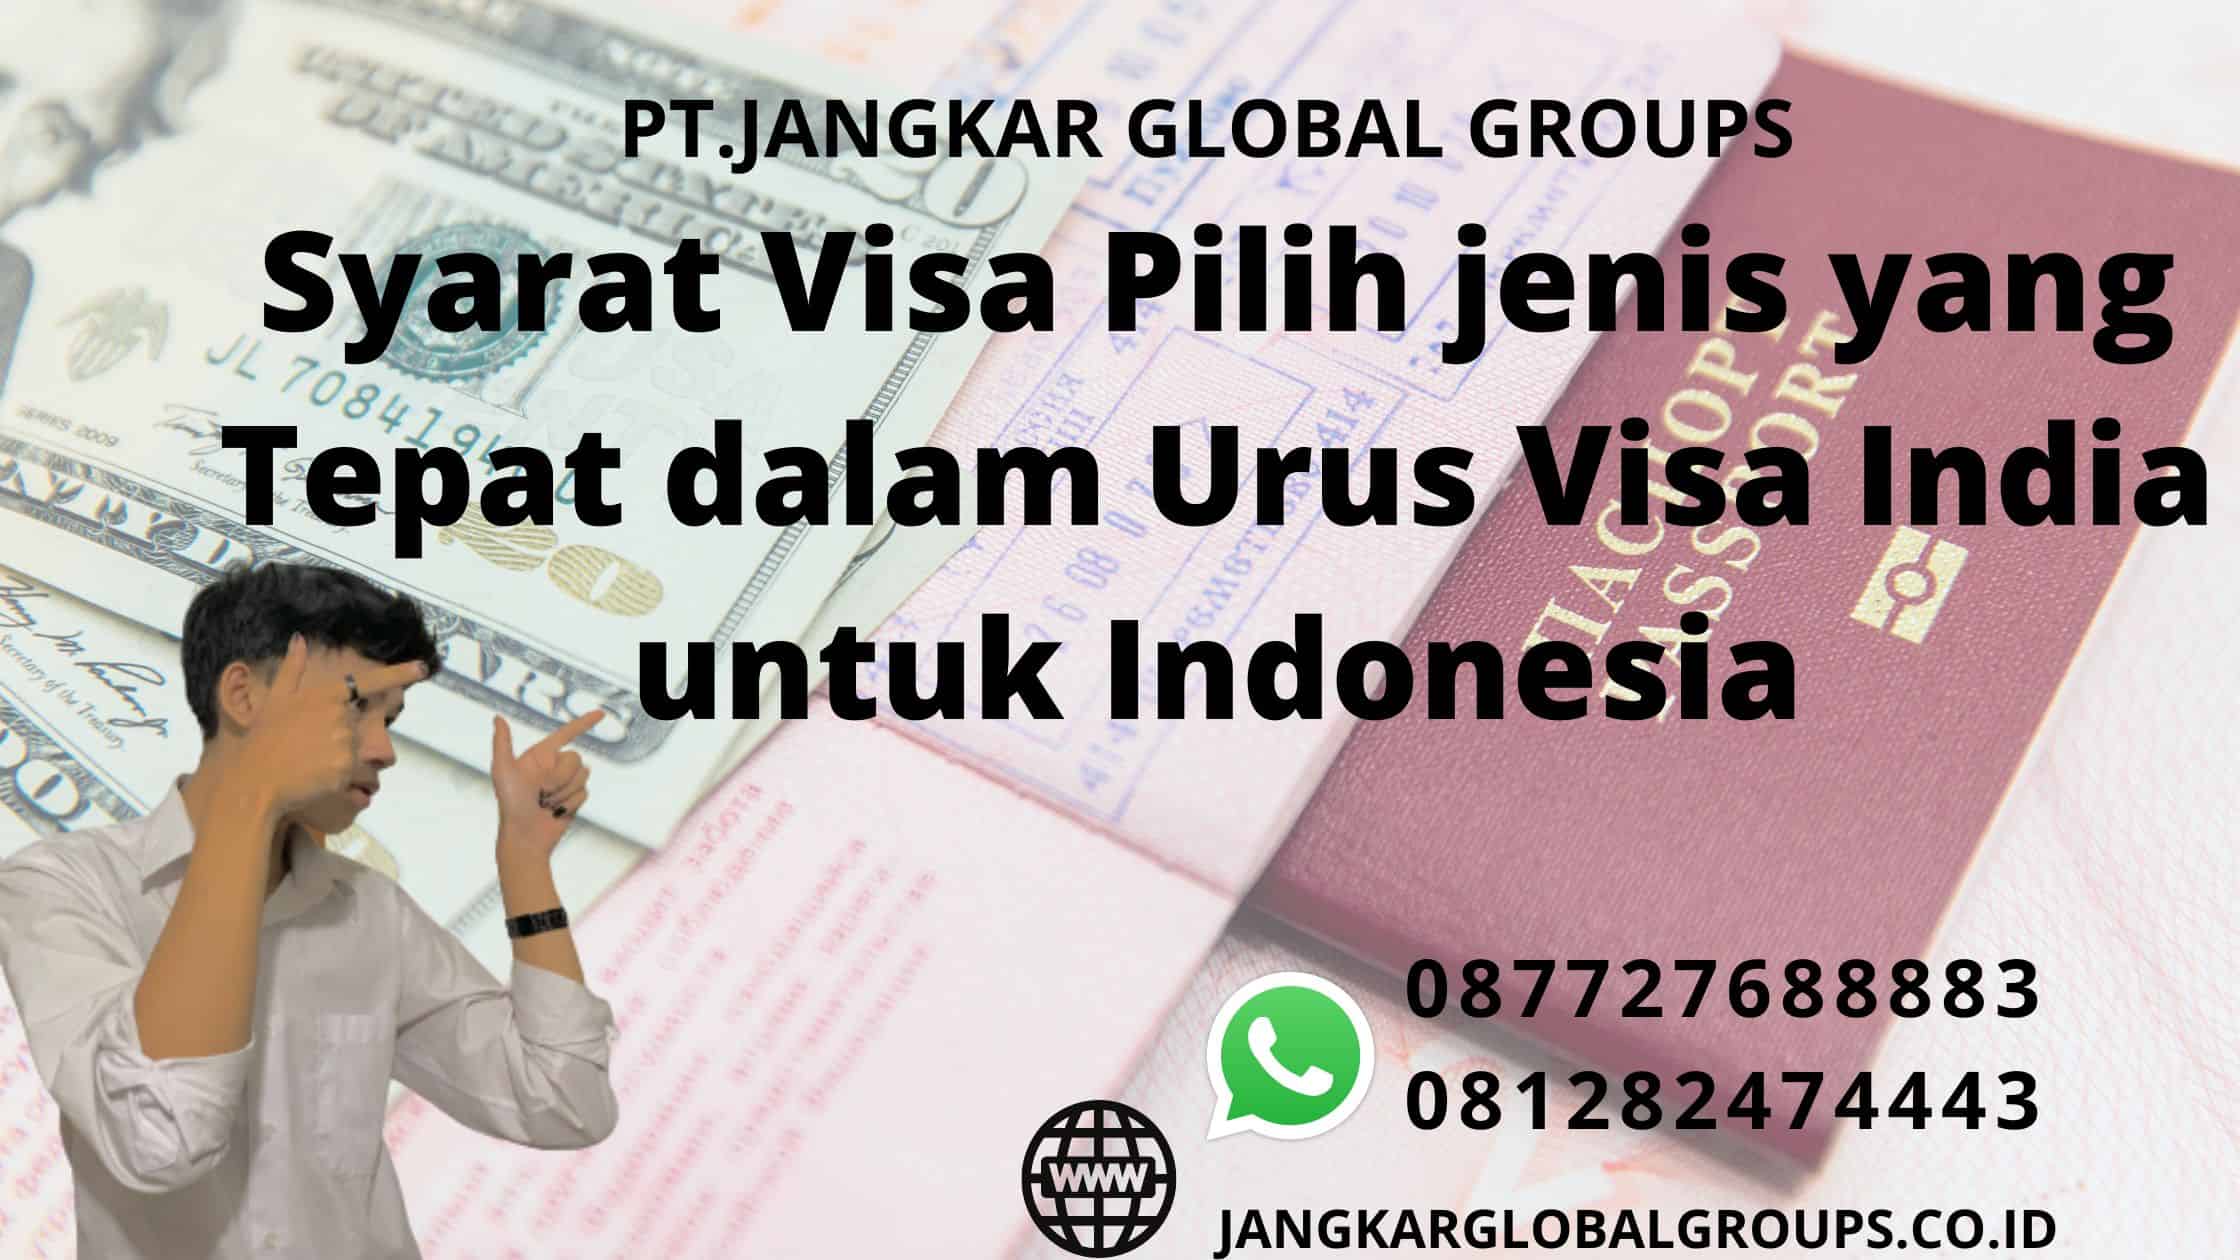 Syarat Visa Pilih jenis yang Tepat dalam Urus Visa India untuk Indonesia